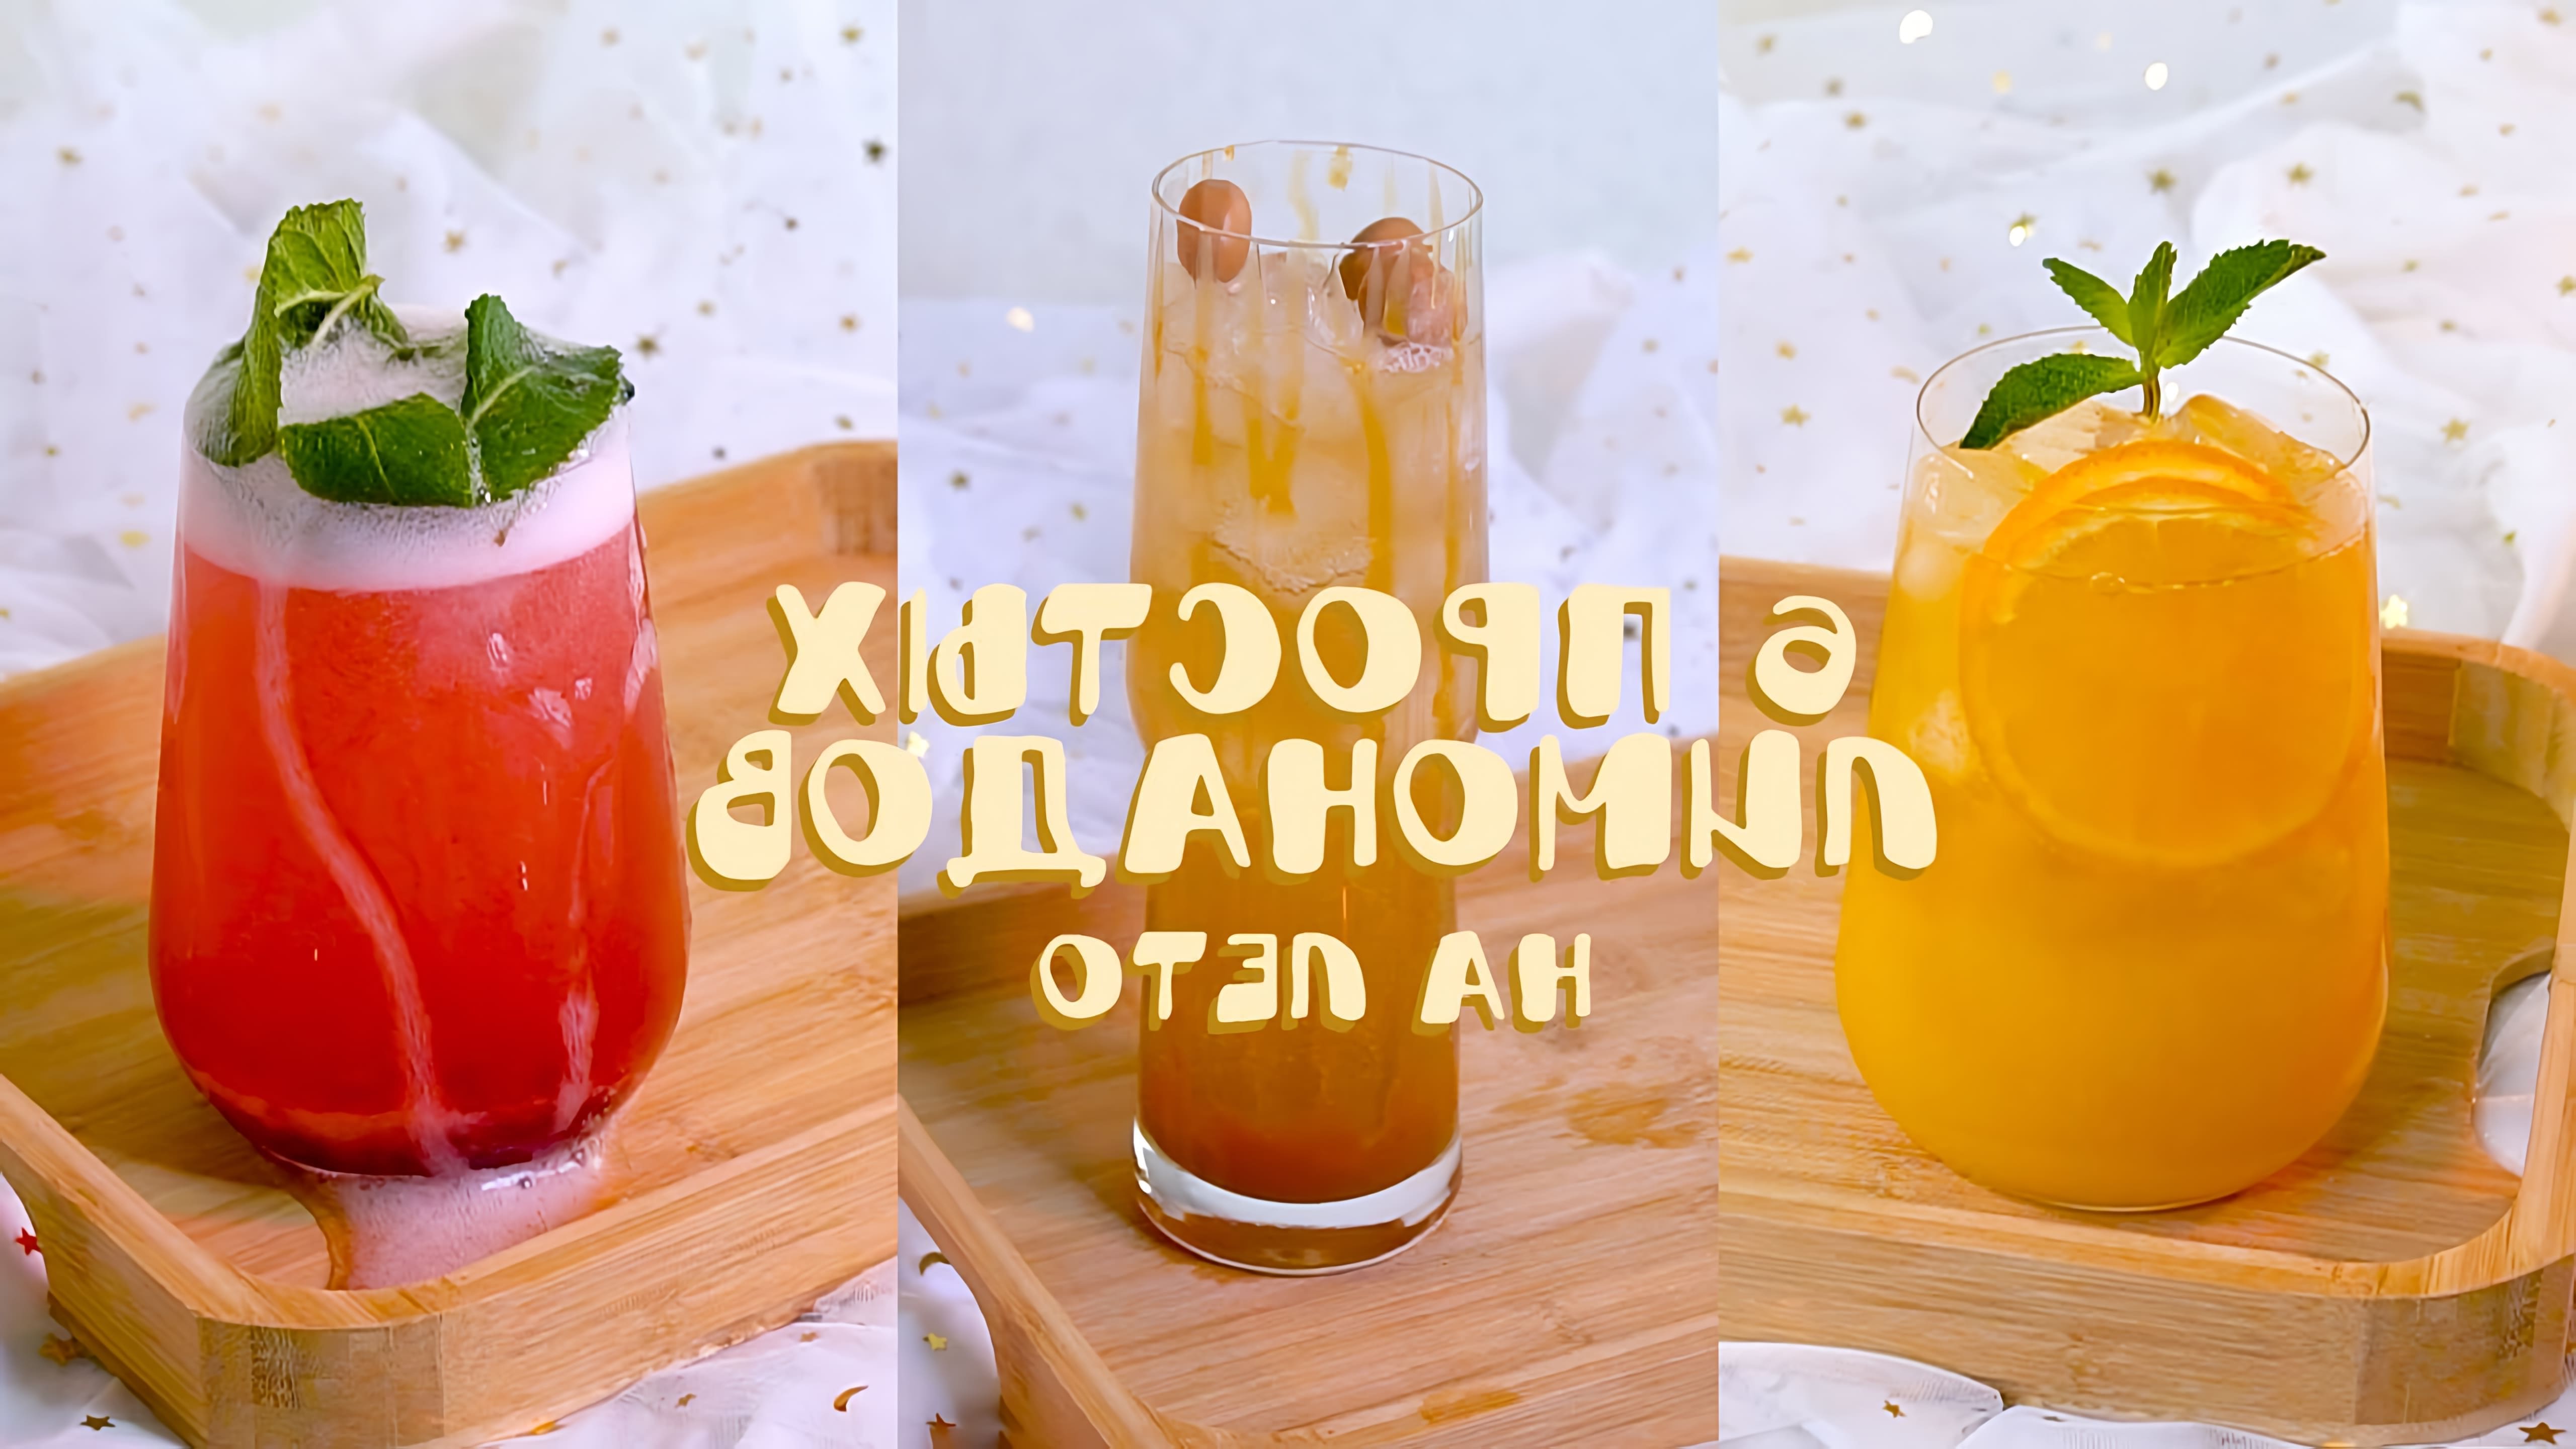 Видео рассматривает 6 простых рецептов напитков, которые хорошо попробовать летом